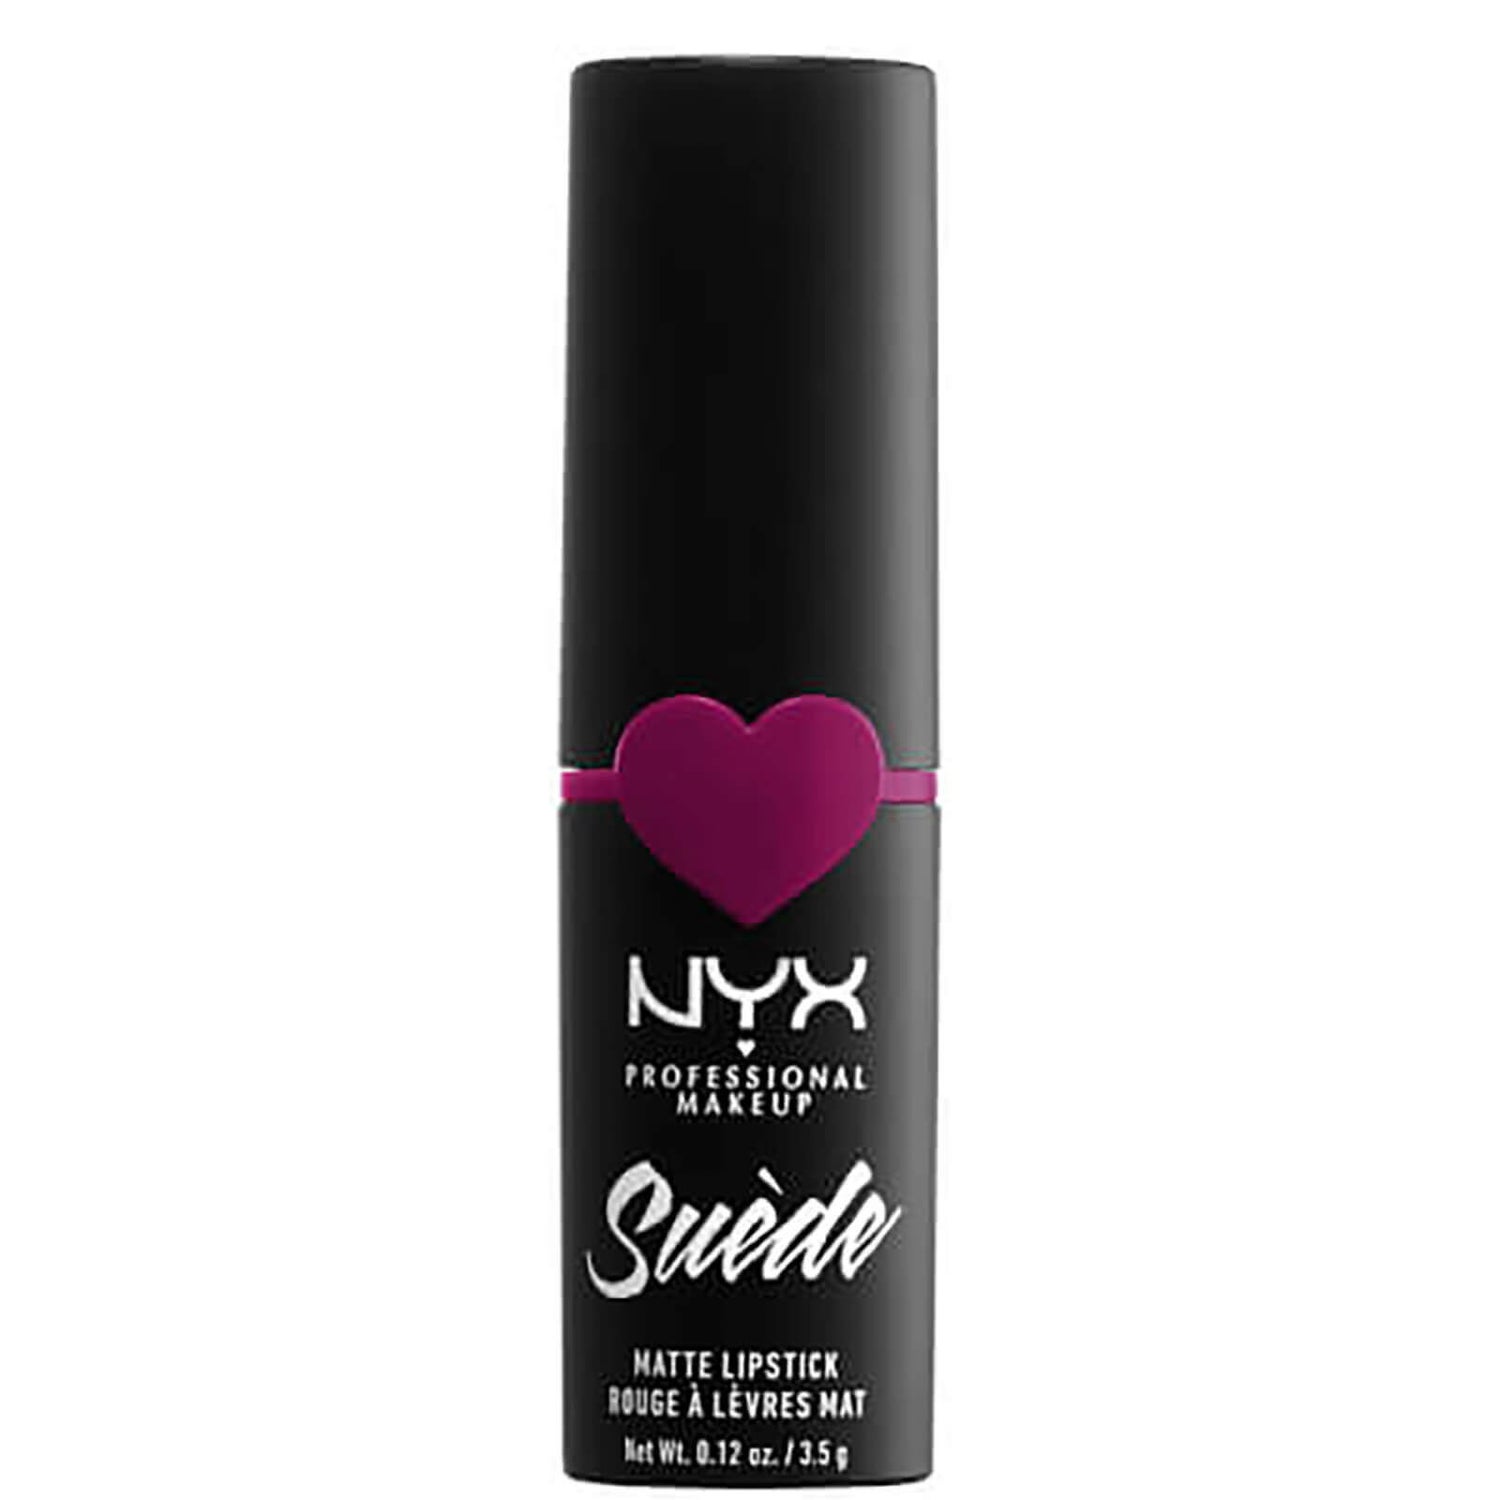 NYX 프로페셔널 메이크업 스웨이드 매트 립스틱 (다양한 색조)